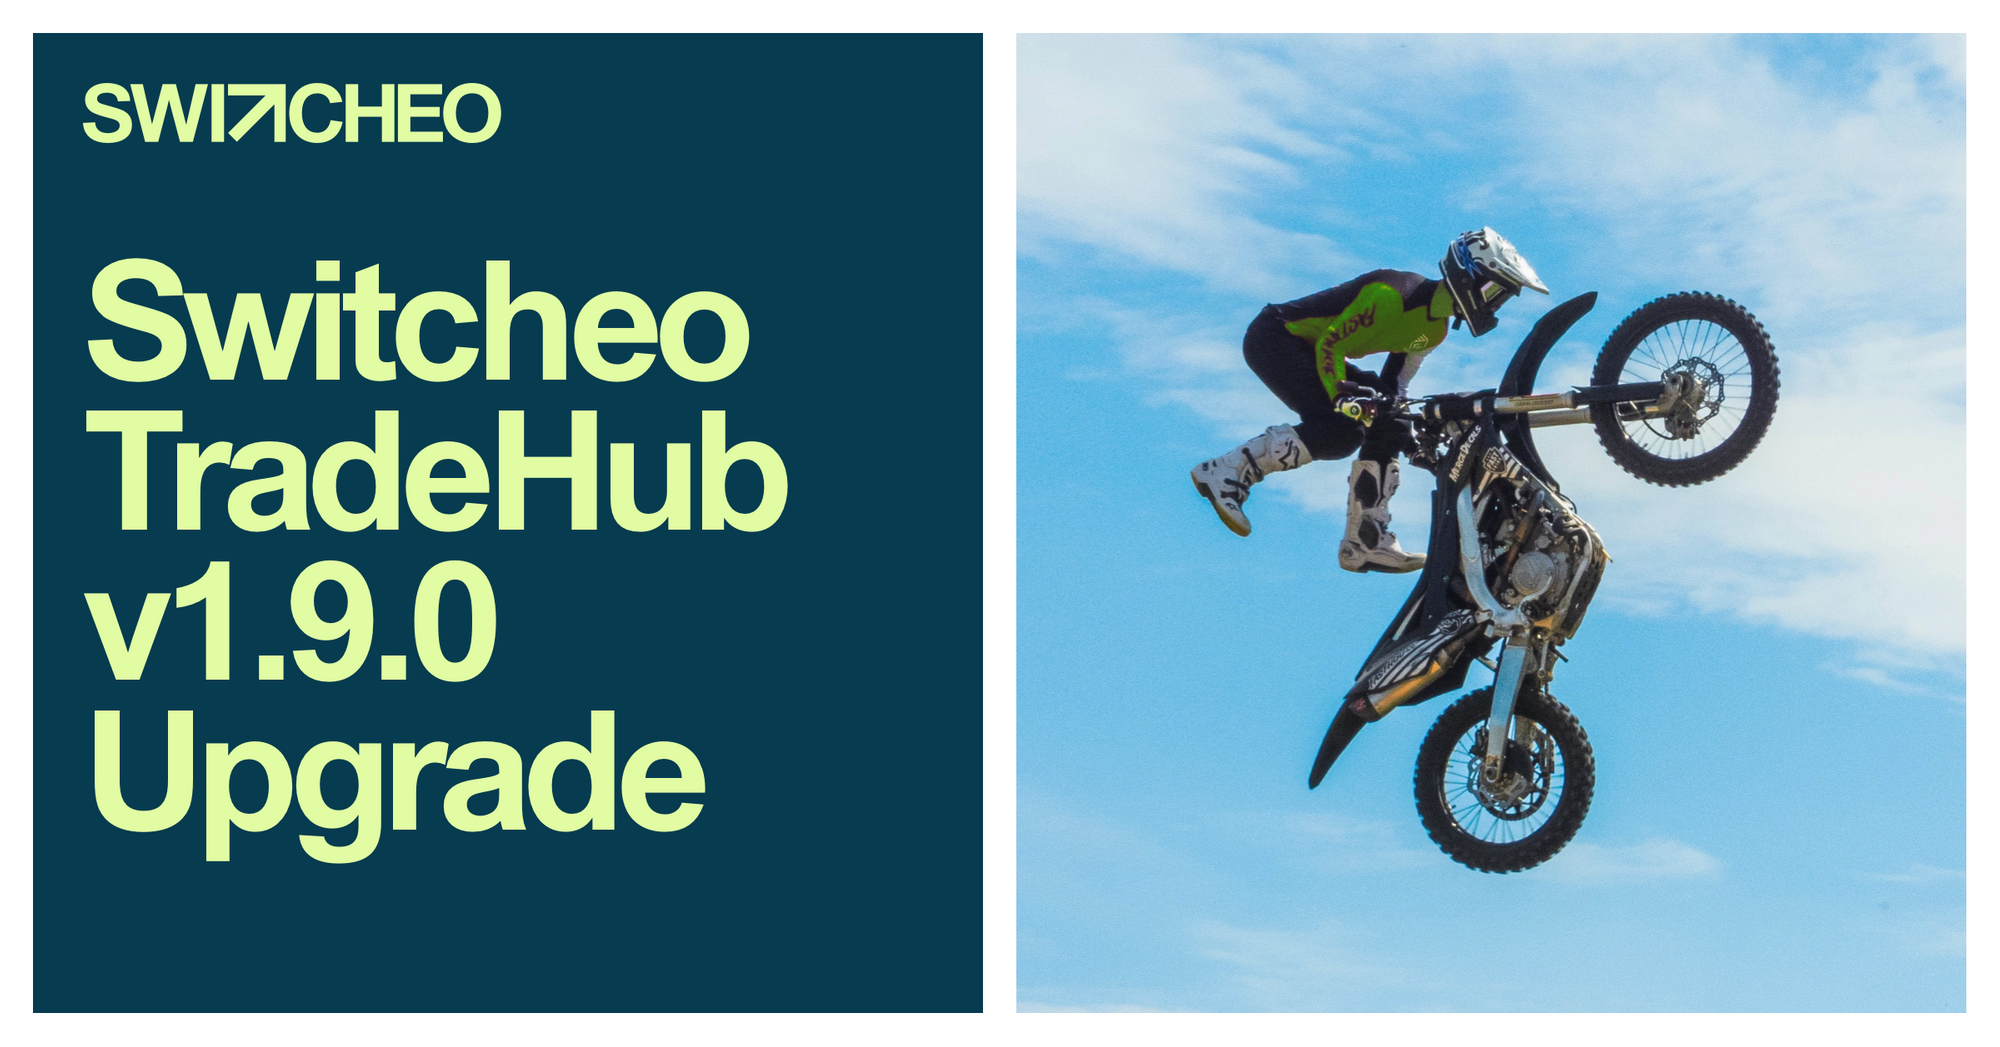 Switcheo TradeHub v1.9.0 Upgrade